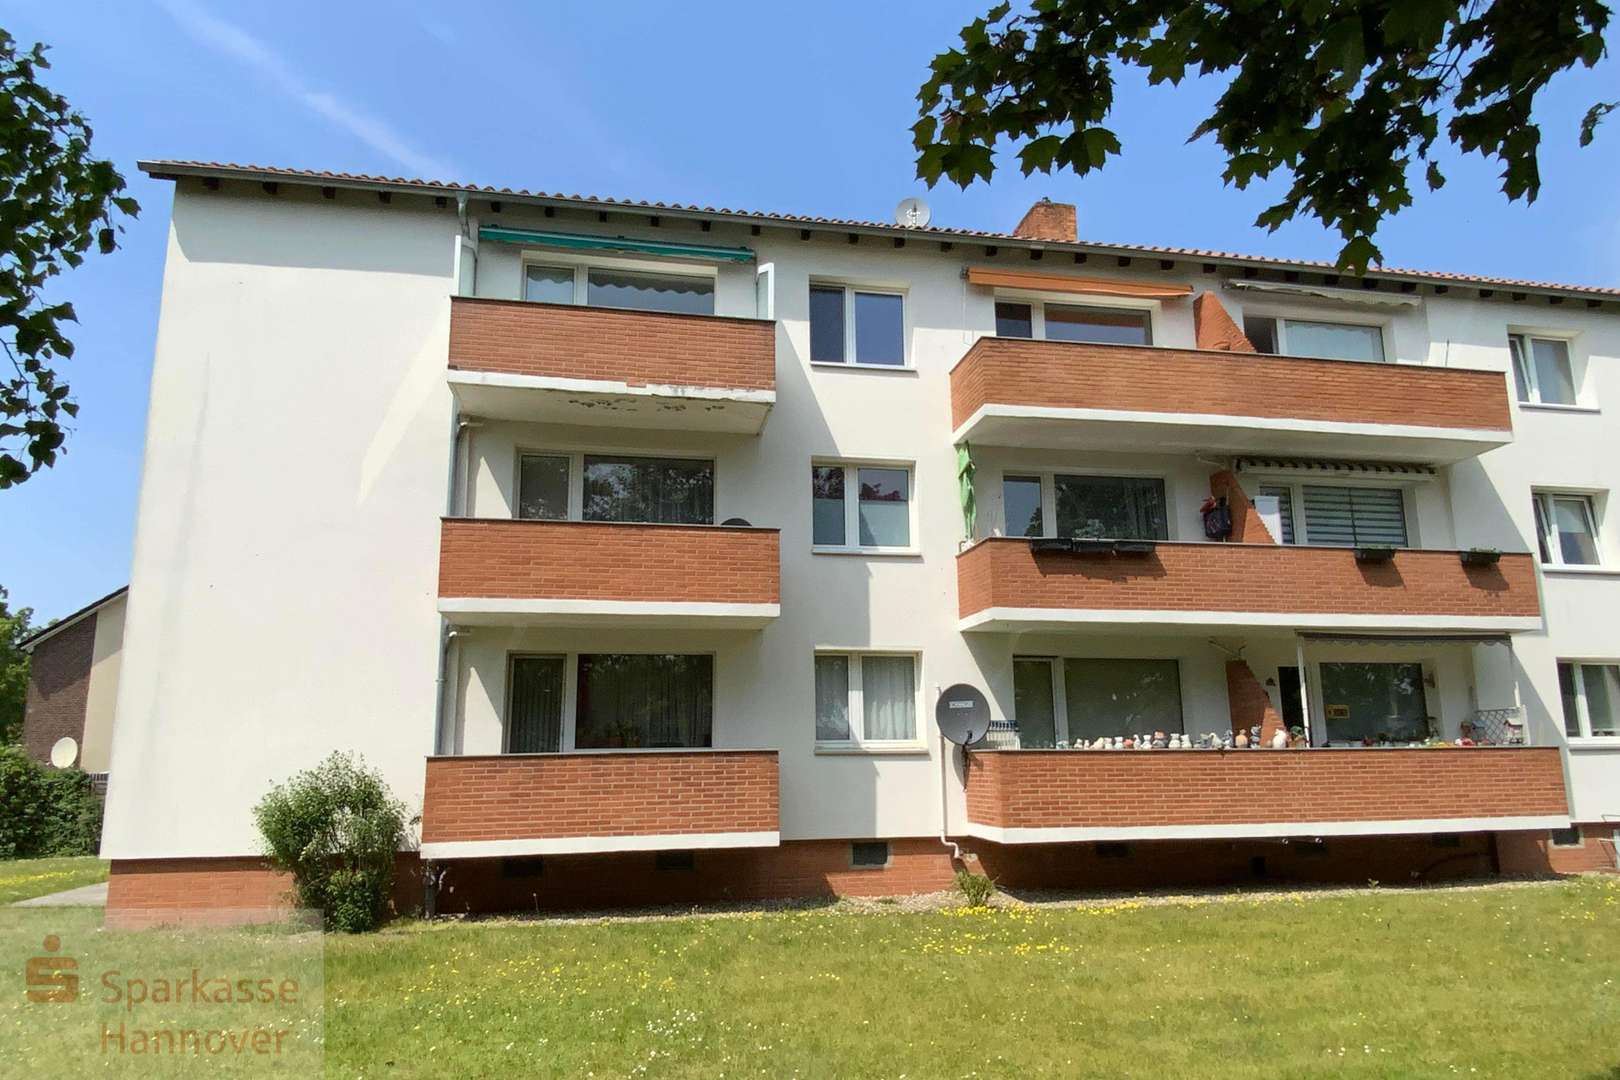 Südosten - Etagenwohnung in 31303 Burgdorf mit 66m² kaufen